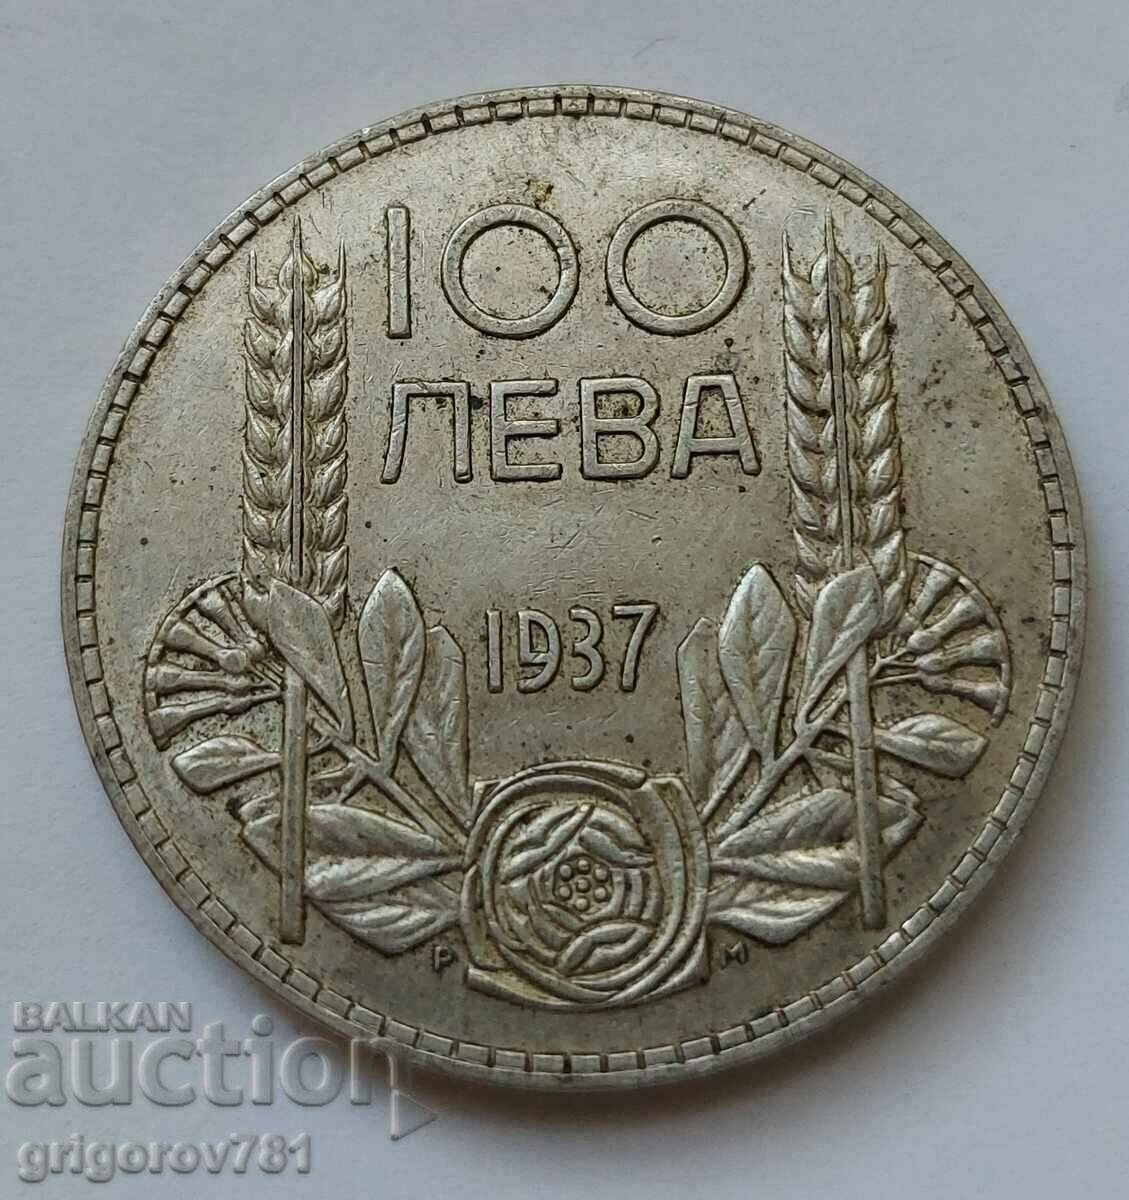 Ασήμι 100 λέβα Βουλγαρία 1937 - ασημένιο νόμισμα #113